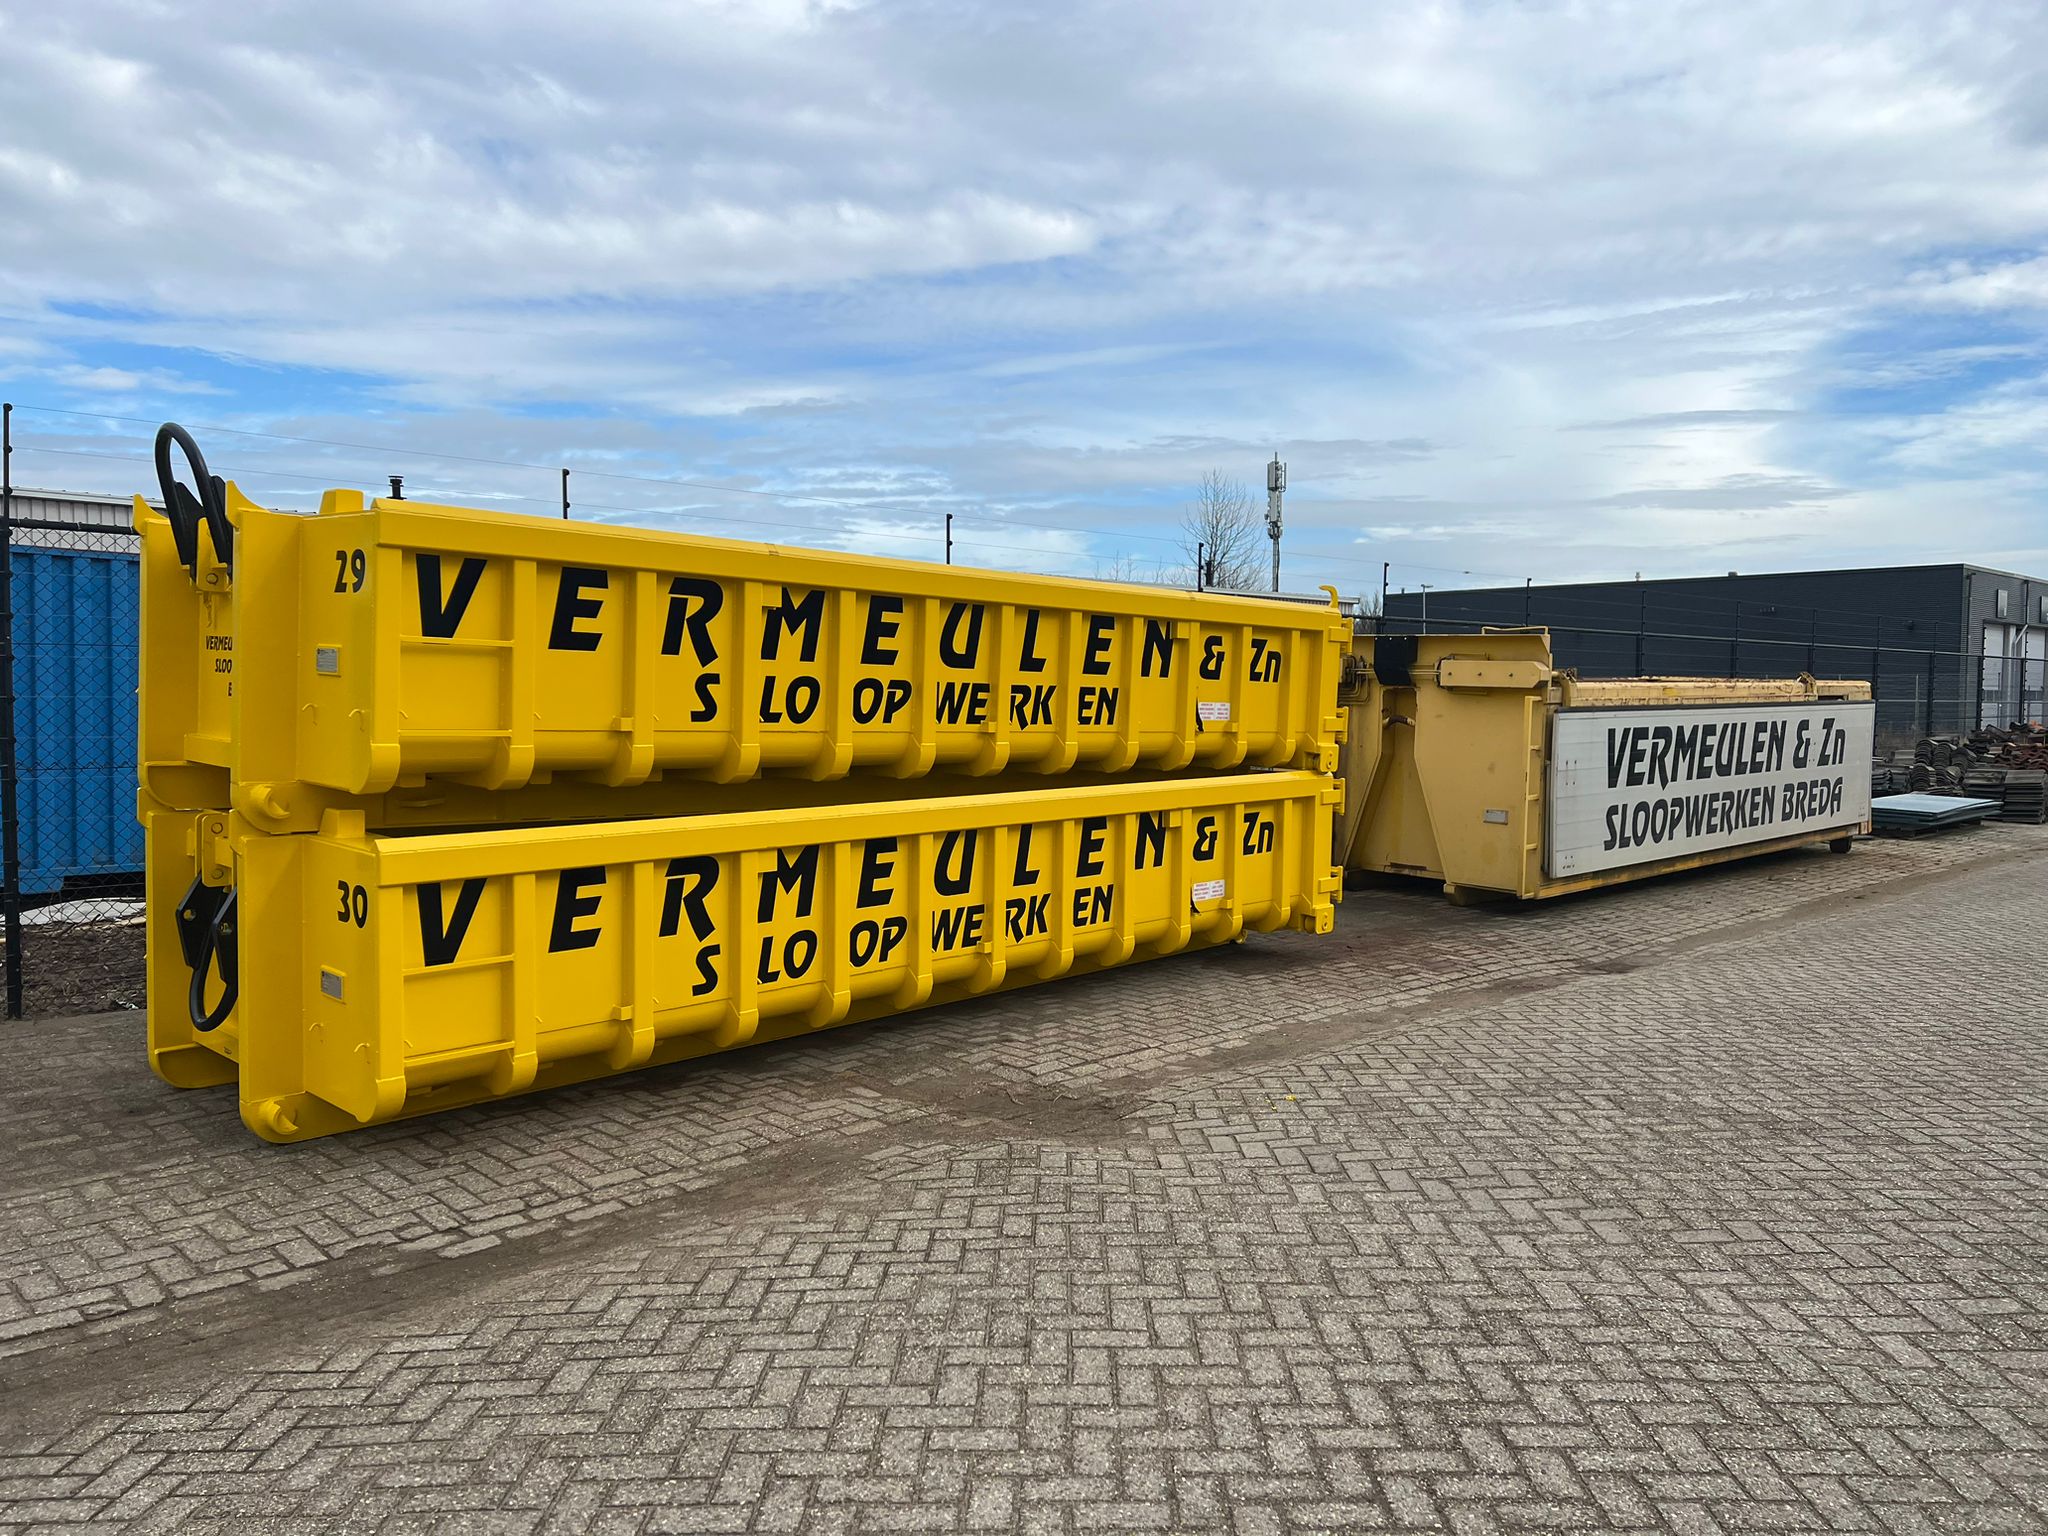 Vermeulen & Zn sloopwerken Breda b.v. levert als grondstoffen/gebruikte sloopmaterialen leverancier een belangrijke bijdrage aan de transitie naar een Circulaire en duurzame economie. 